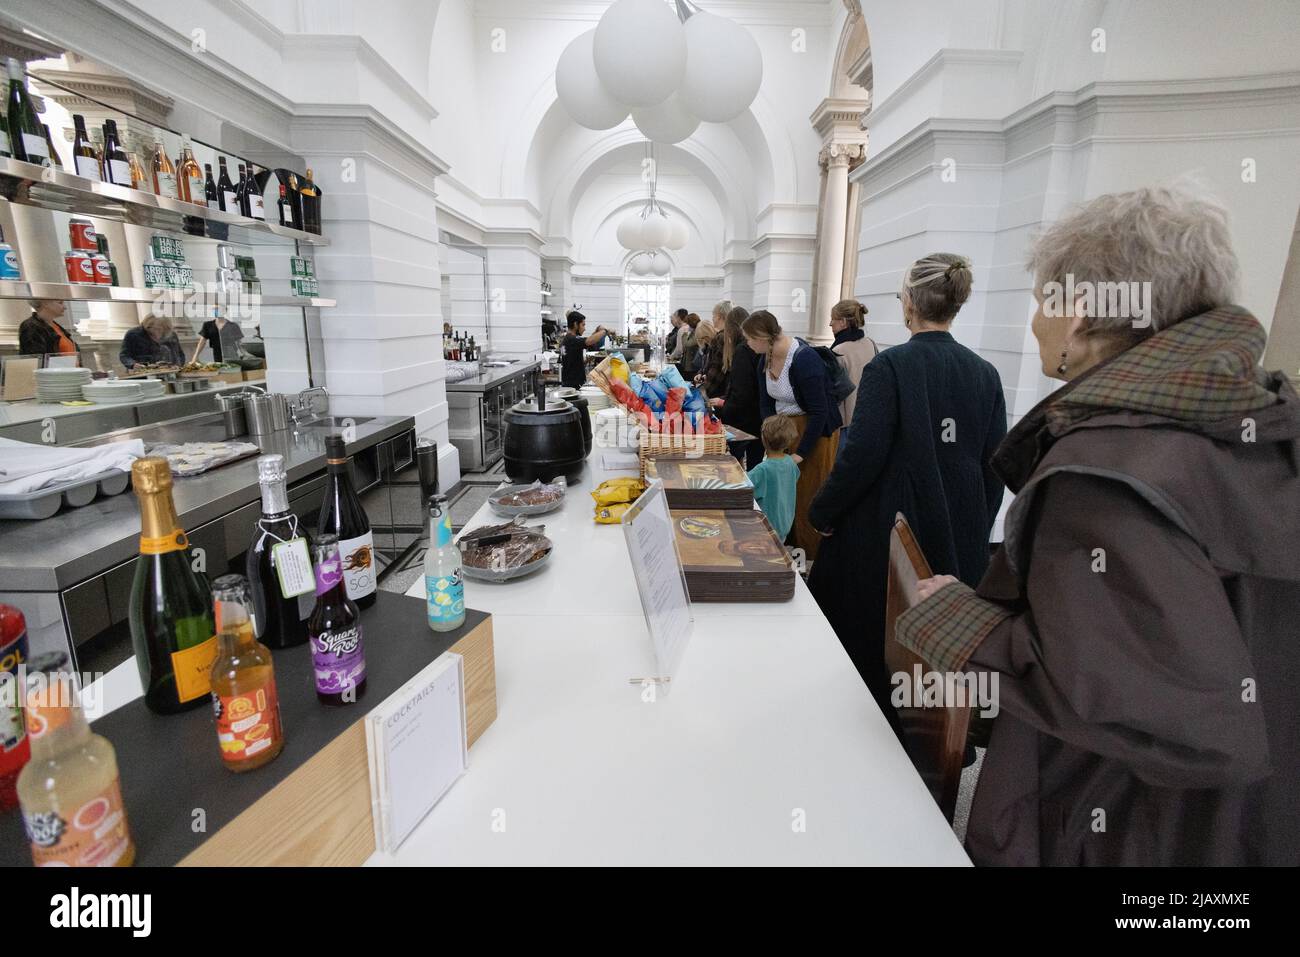 I membri di Tate Britain si sono interni al ristorante; la gente al banco in attesa di cibo e bevande, la galleria d'arte Tate Britain, Millbank, Pimlico London UK Foto Stock